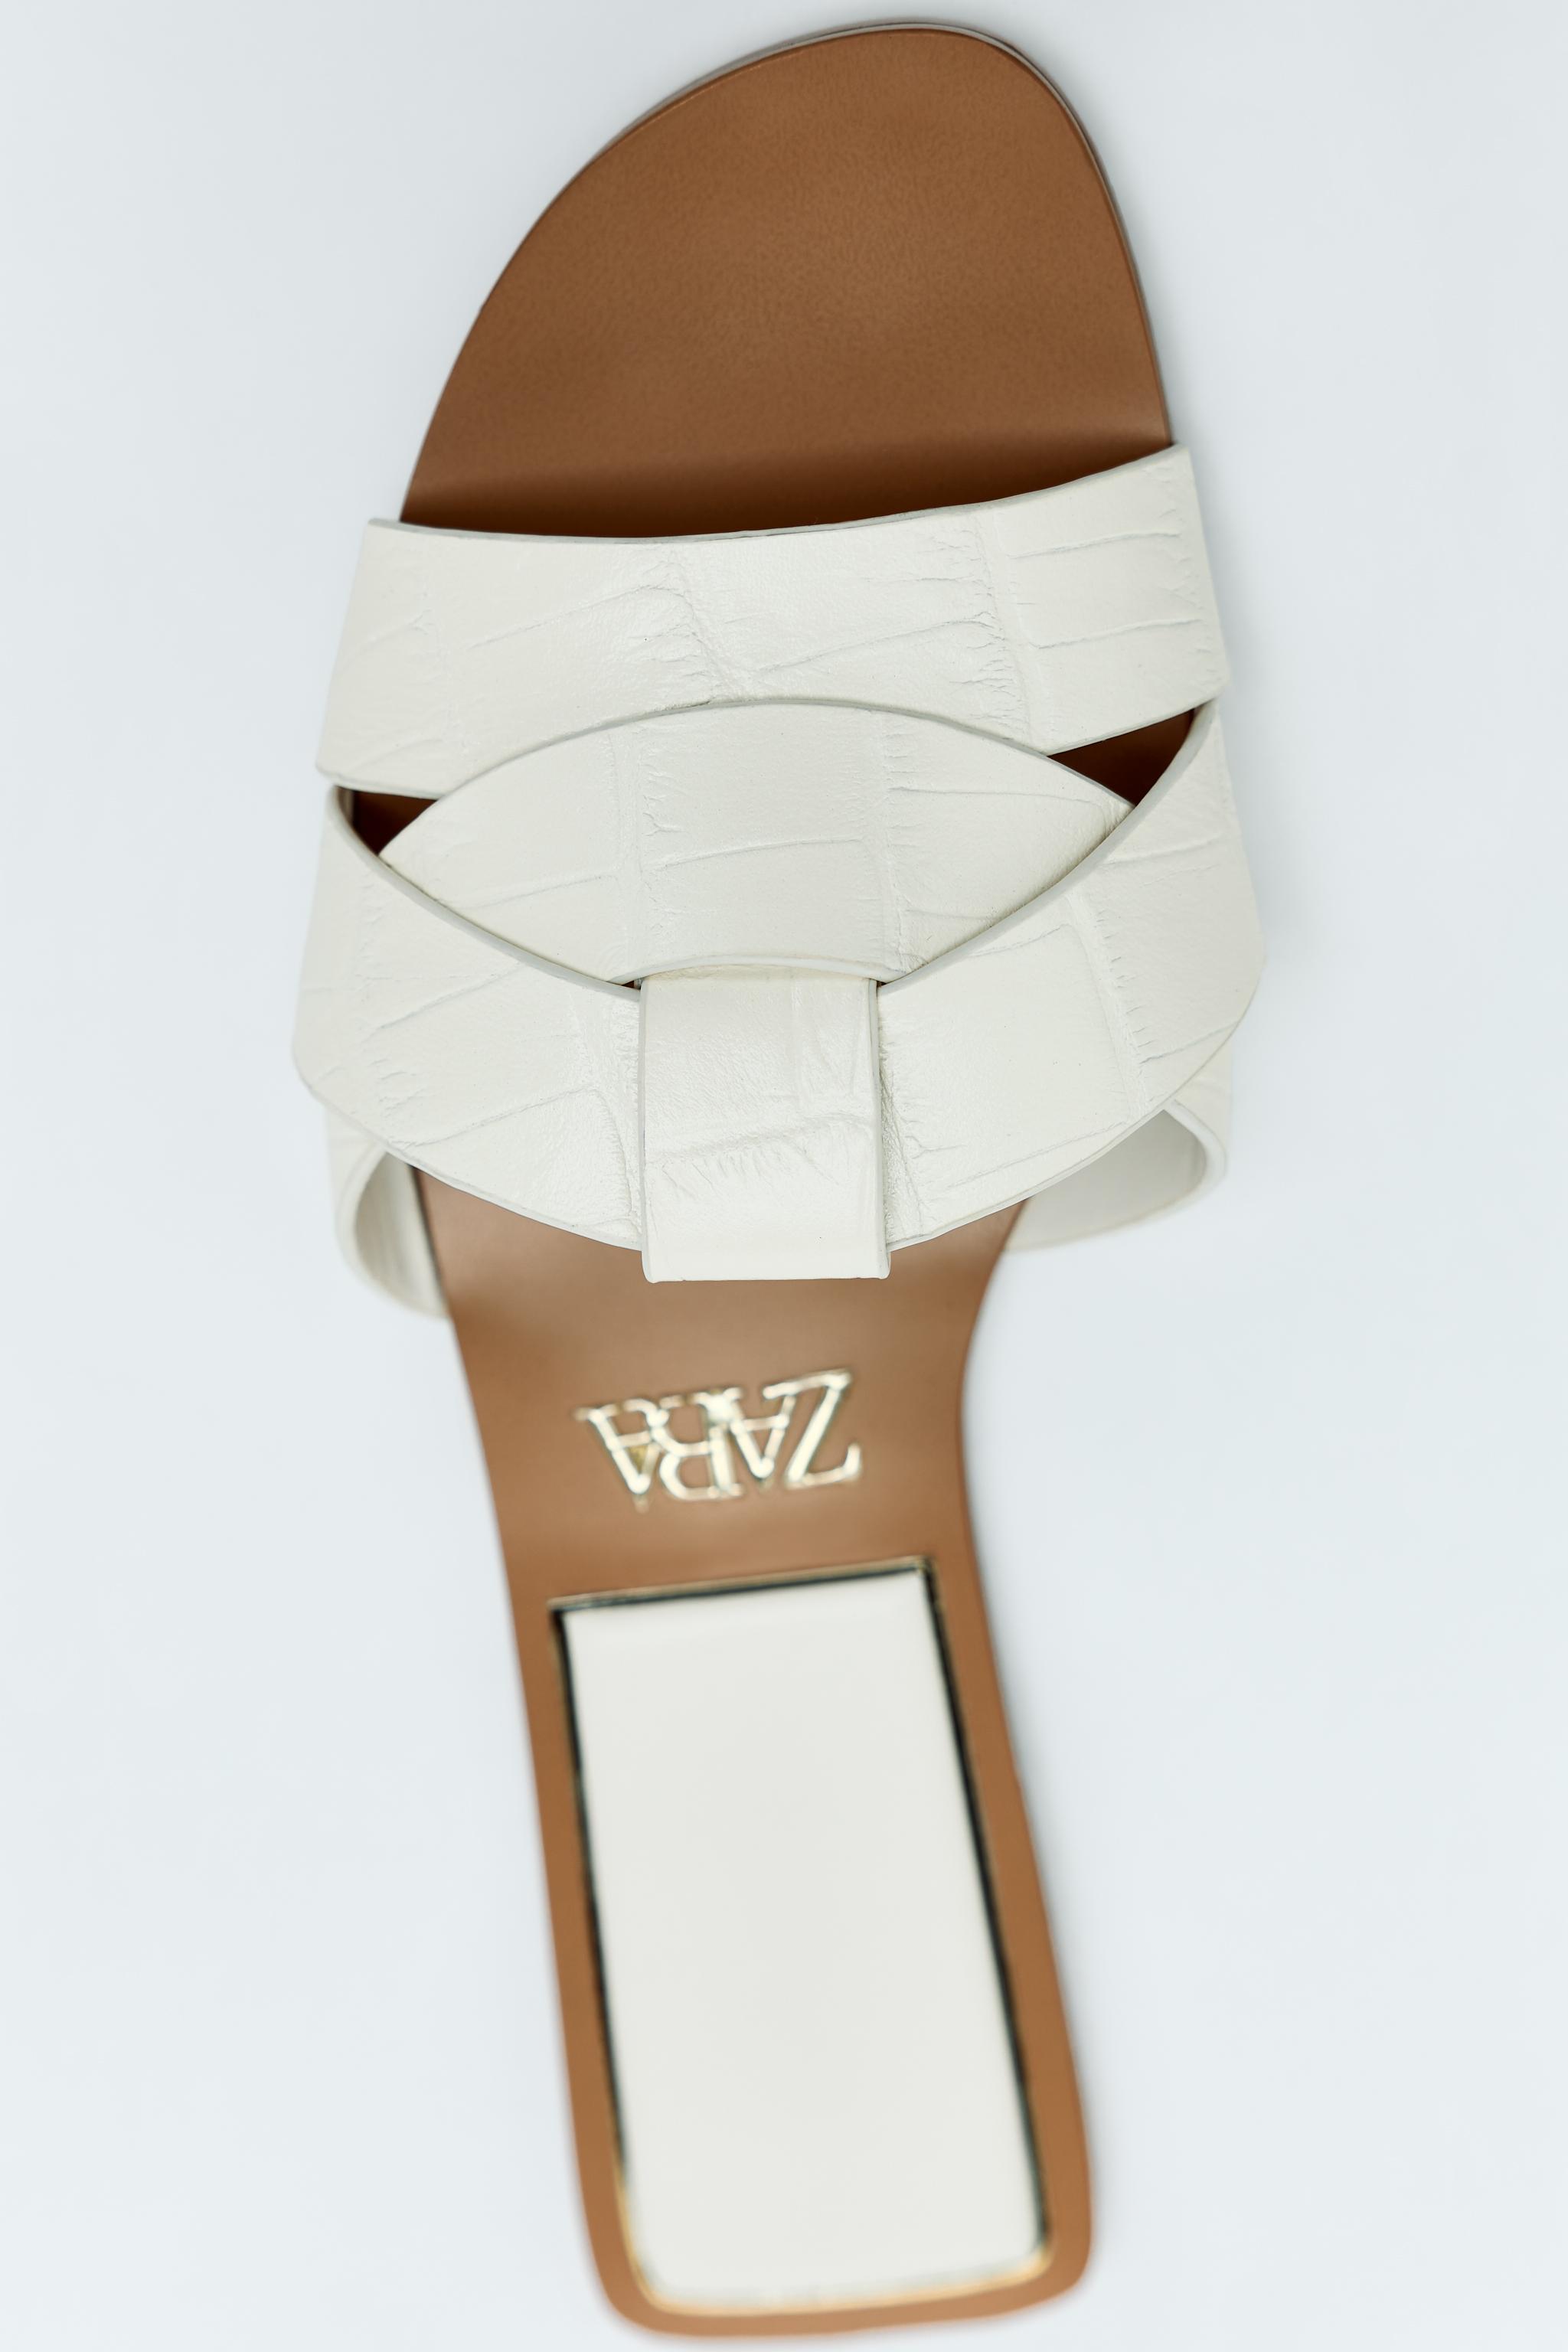 Vestidos blancos holgados y fresquitos de Mango, Zara, Sfera y compañía:  pegan con sandalias cómodas 24/7